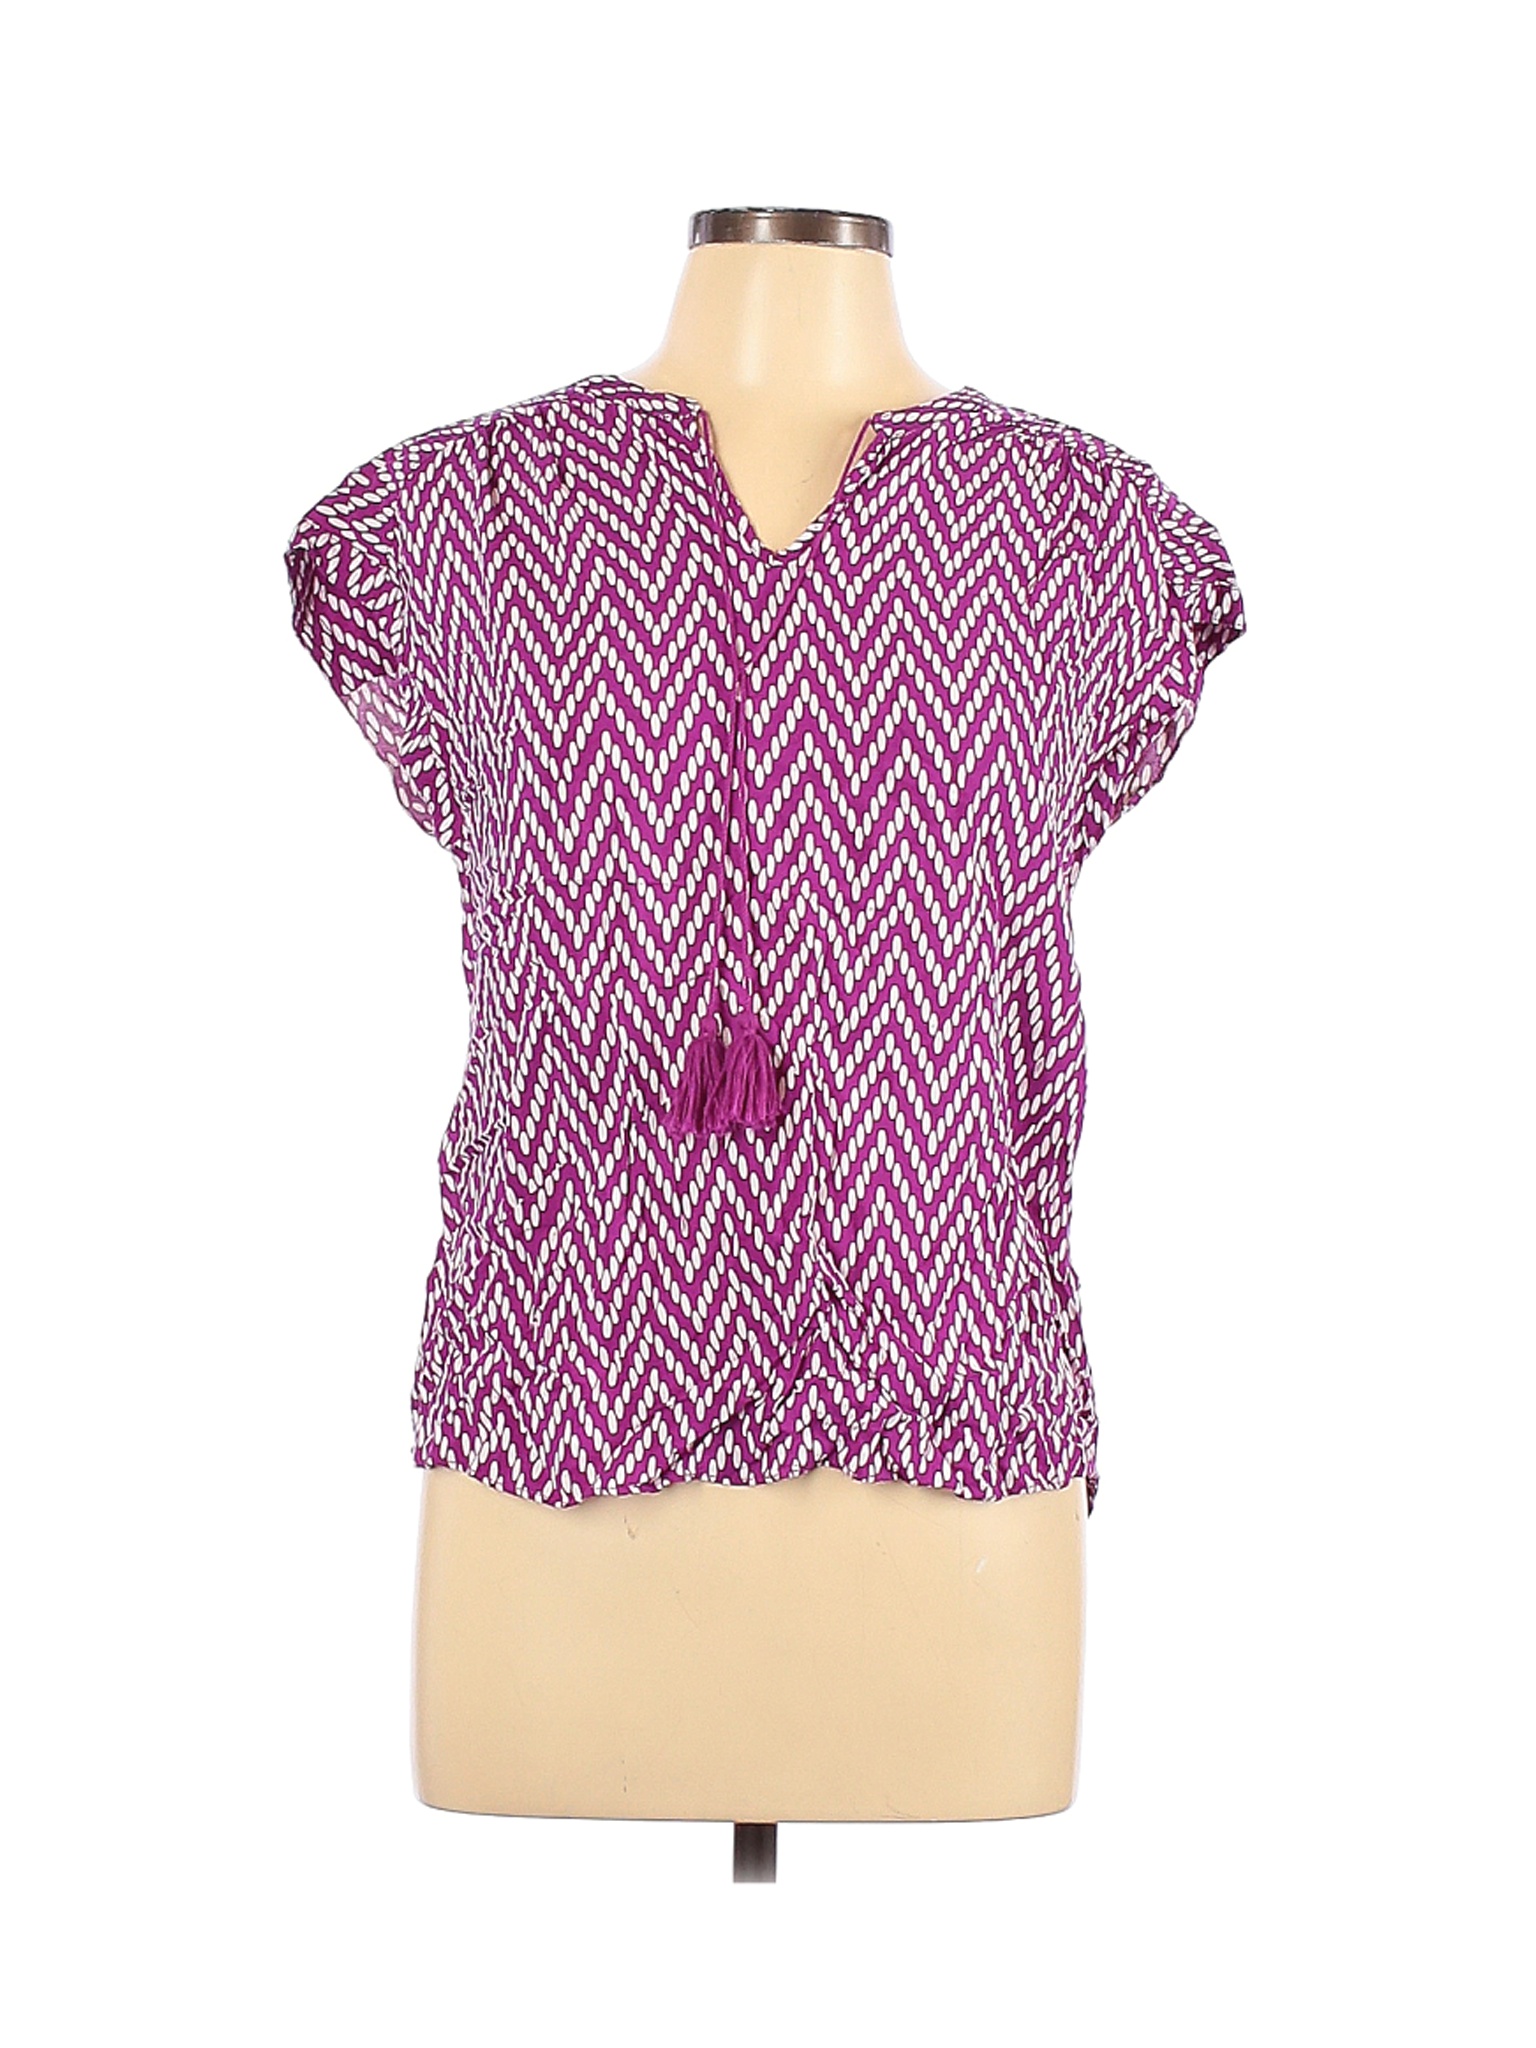 St. John's Bay Women Purple Short Sleeve Blouse L | eBay